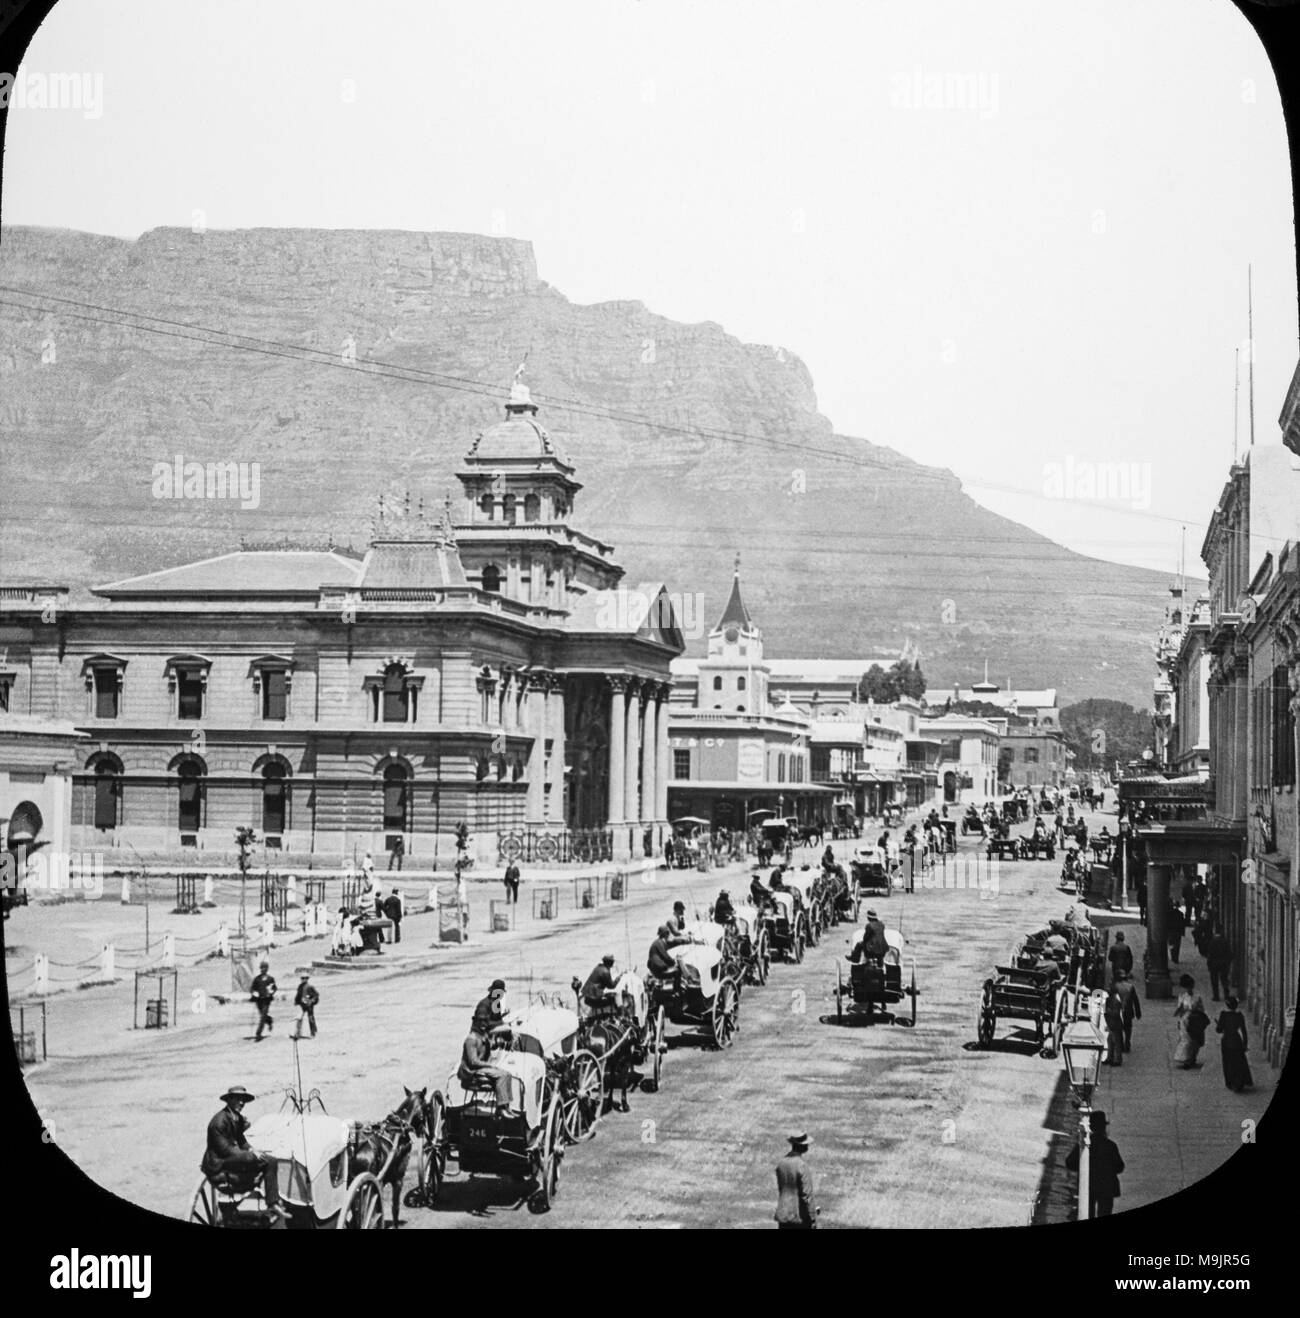 Johannesburgo en Sudáfrica a finales de 1800, durante la Fiebre del Oro años que ayudó a establecer la ciudad de Johannesburgo. Foto de stock